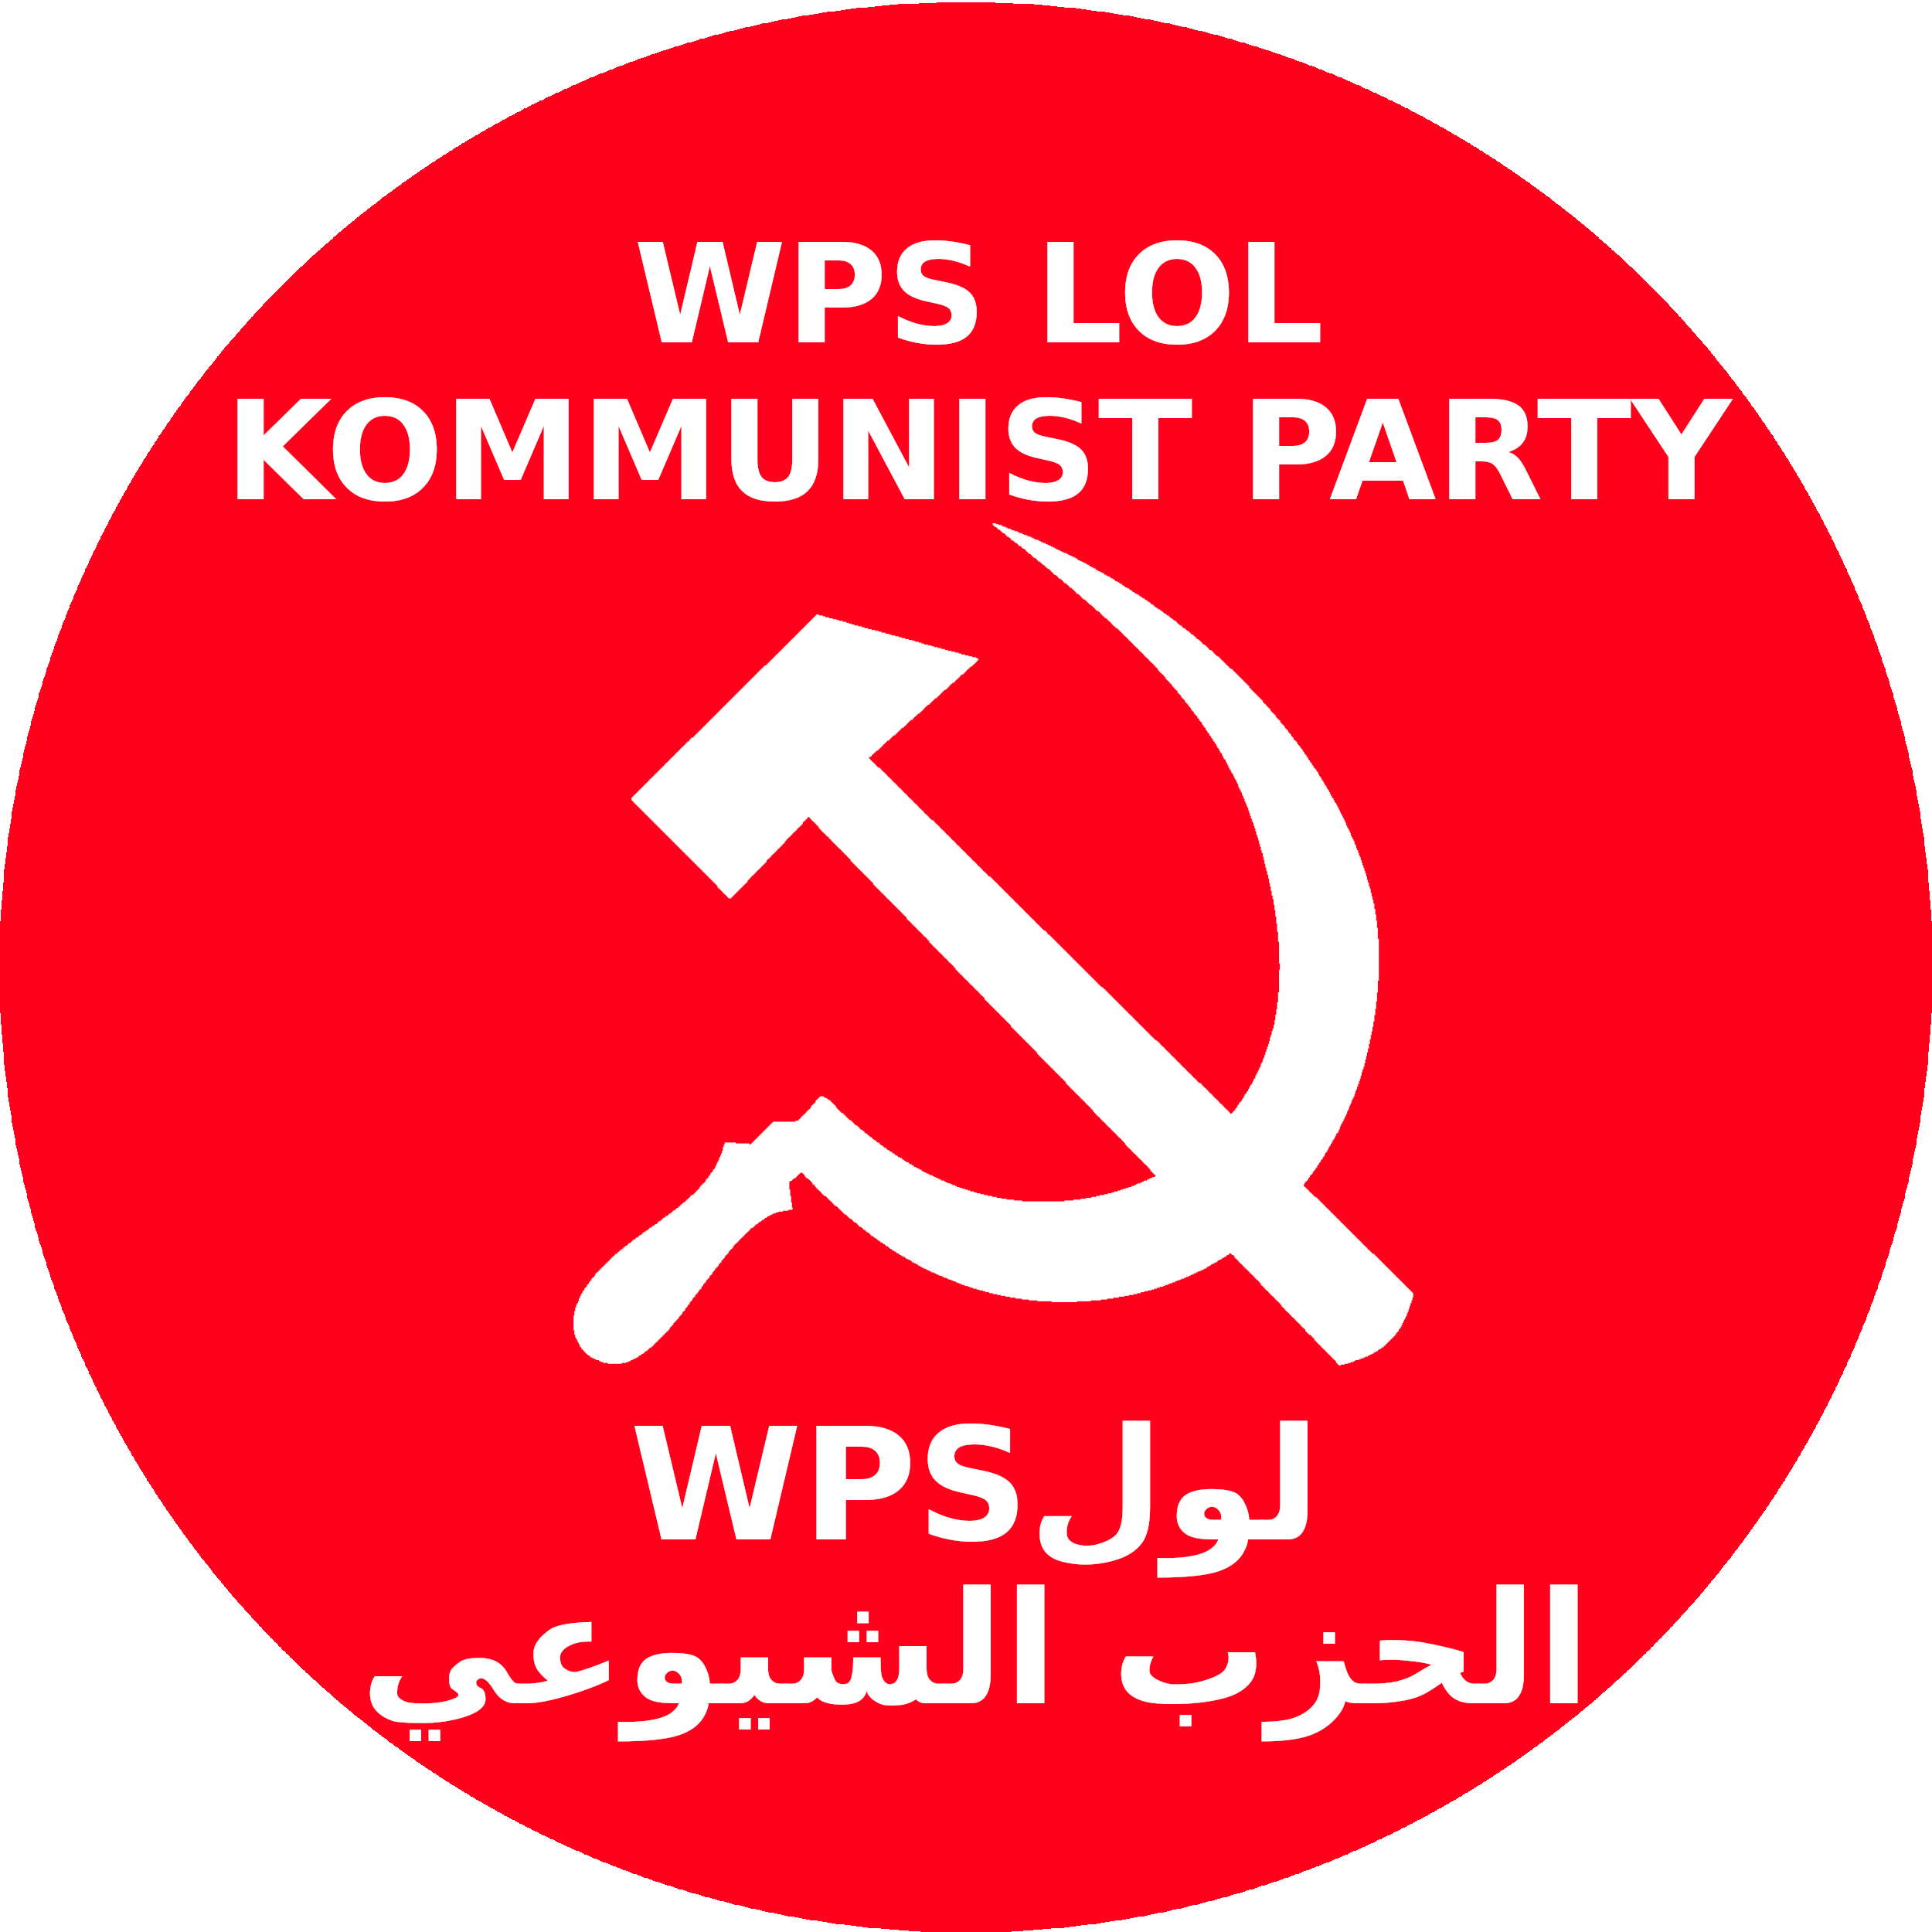 kommunist party 2020